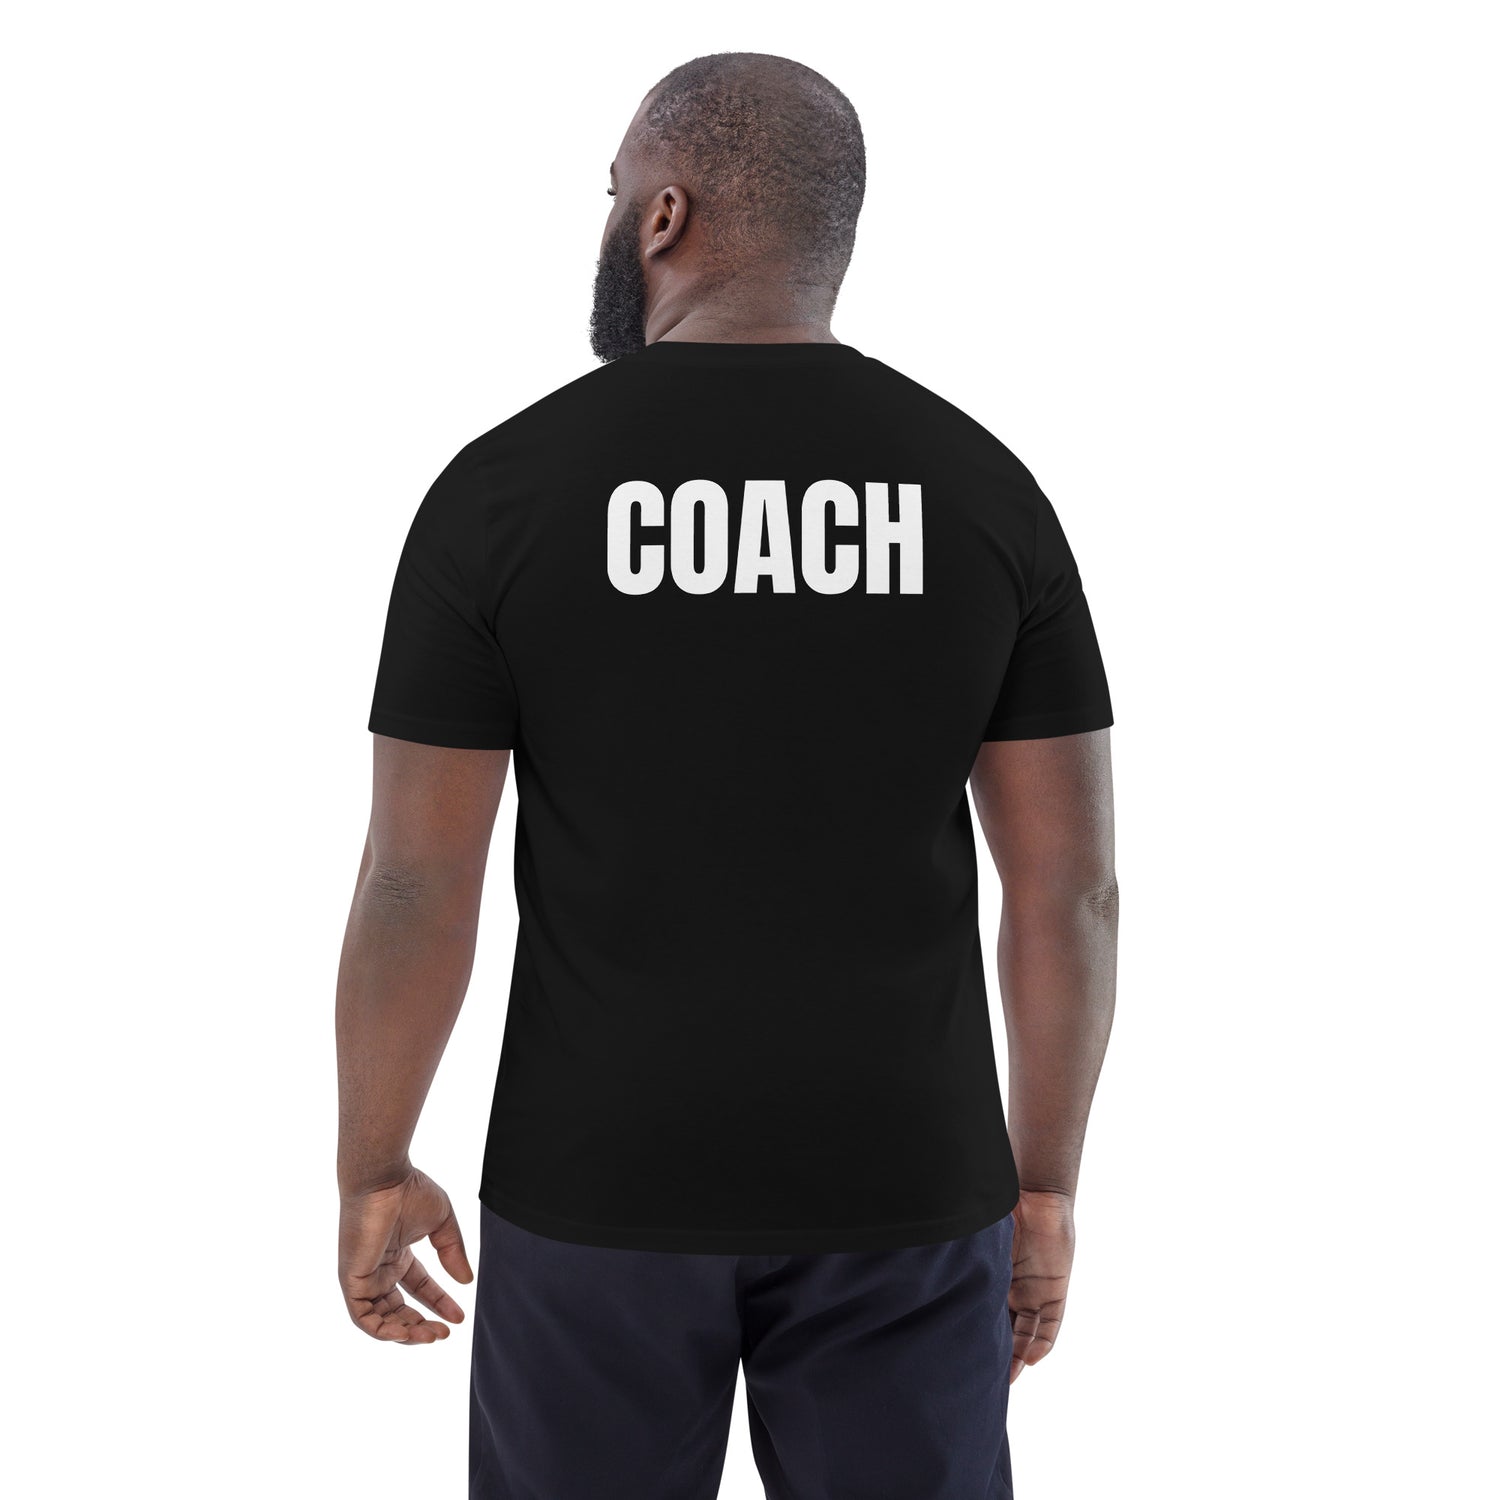 Coach organic cotton t-shirt